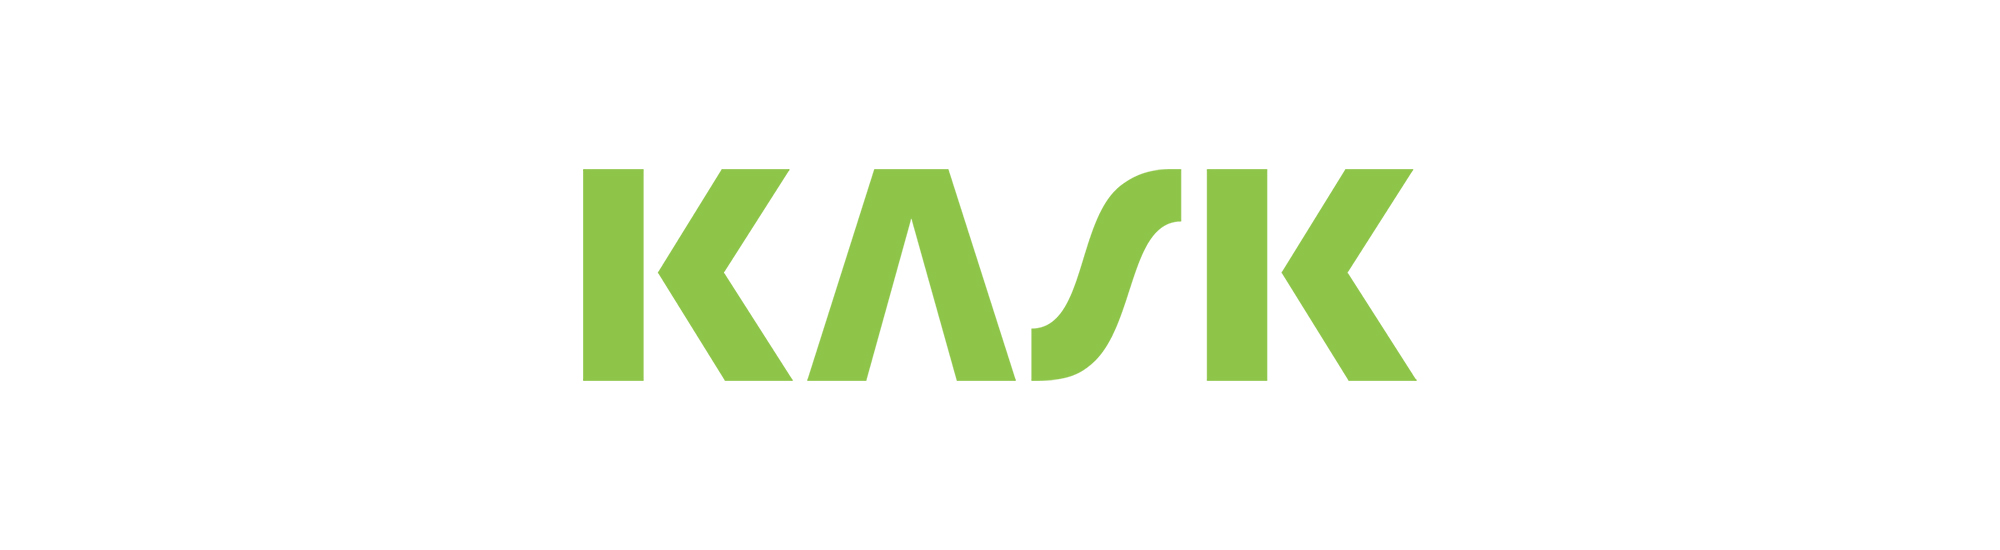 logo kask